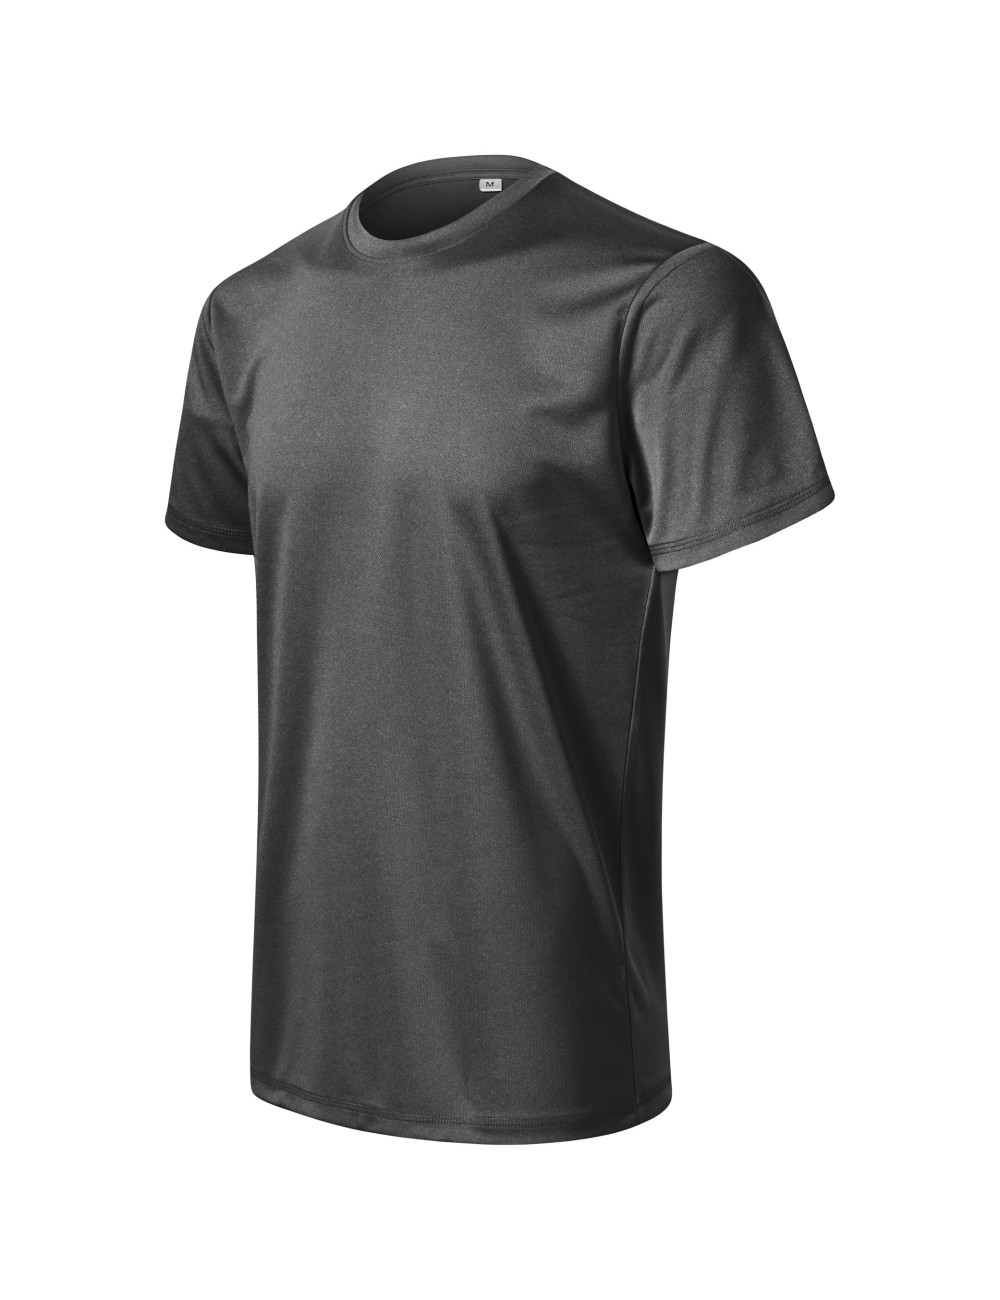 Herren-T-Shirt Chance (grs) 810 schwarz meliert Adler Malfini®